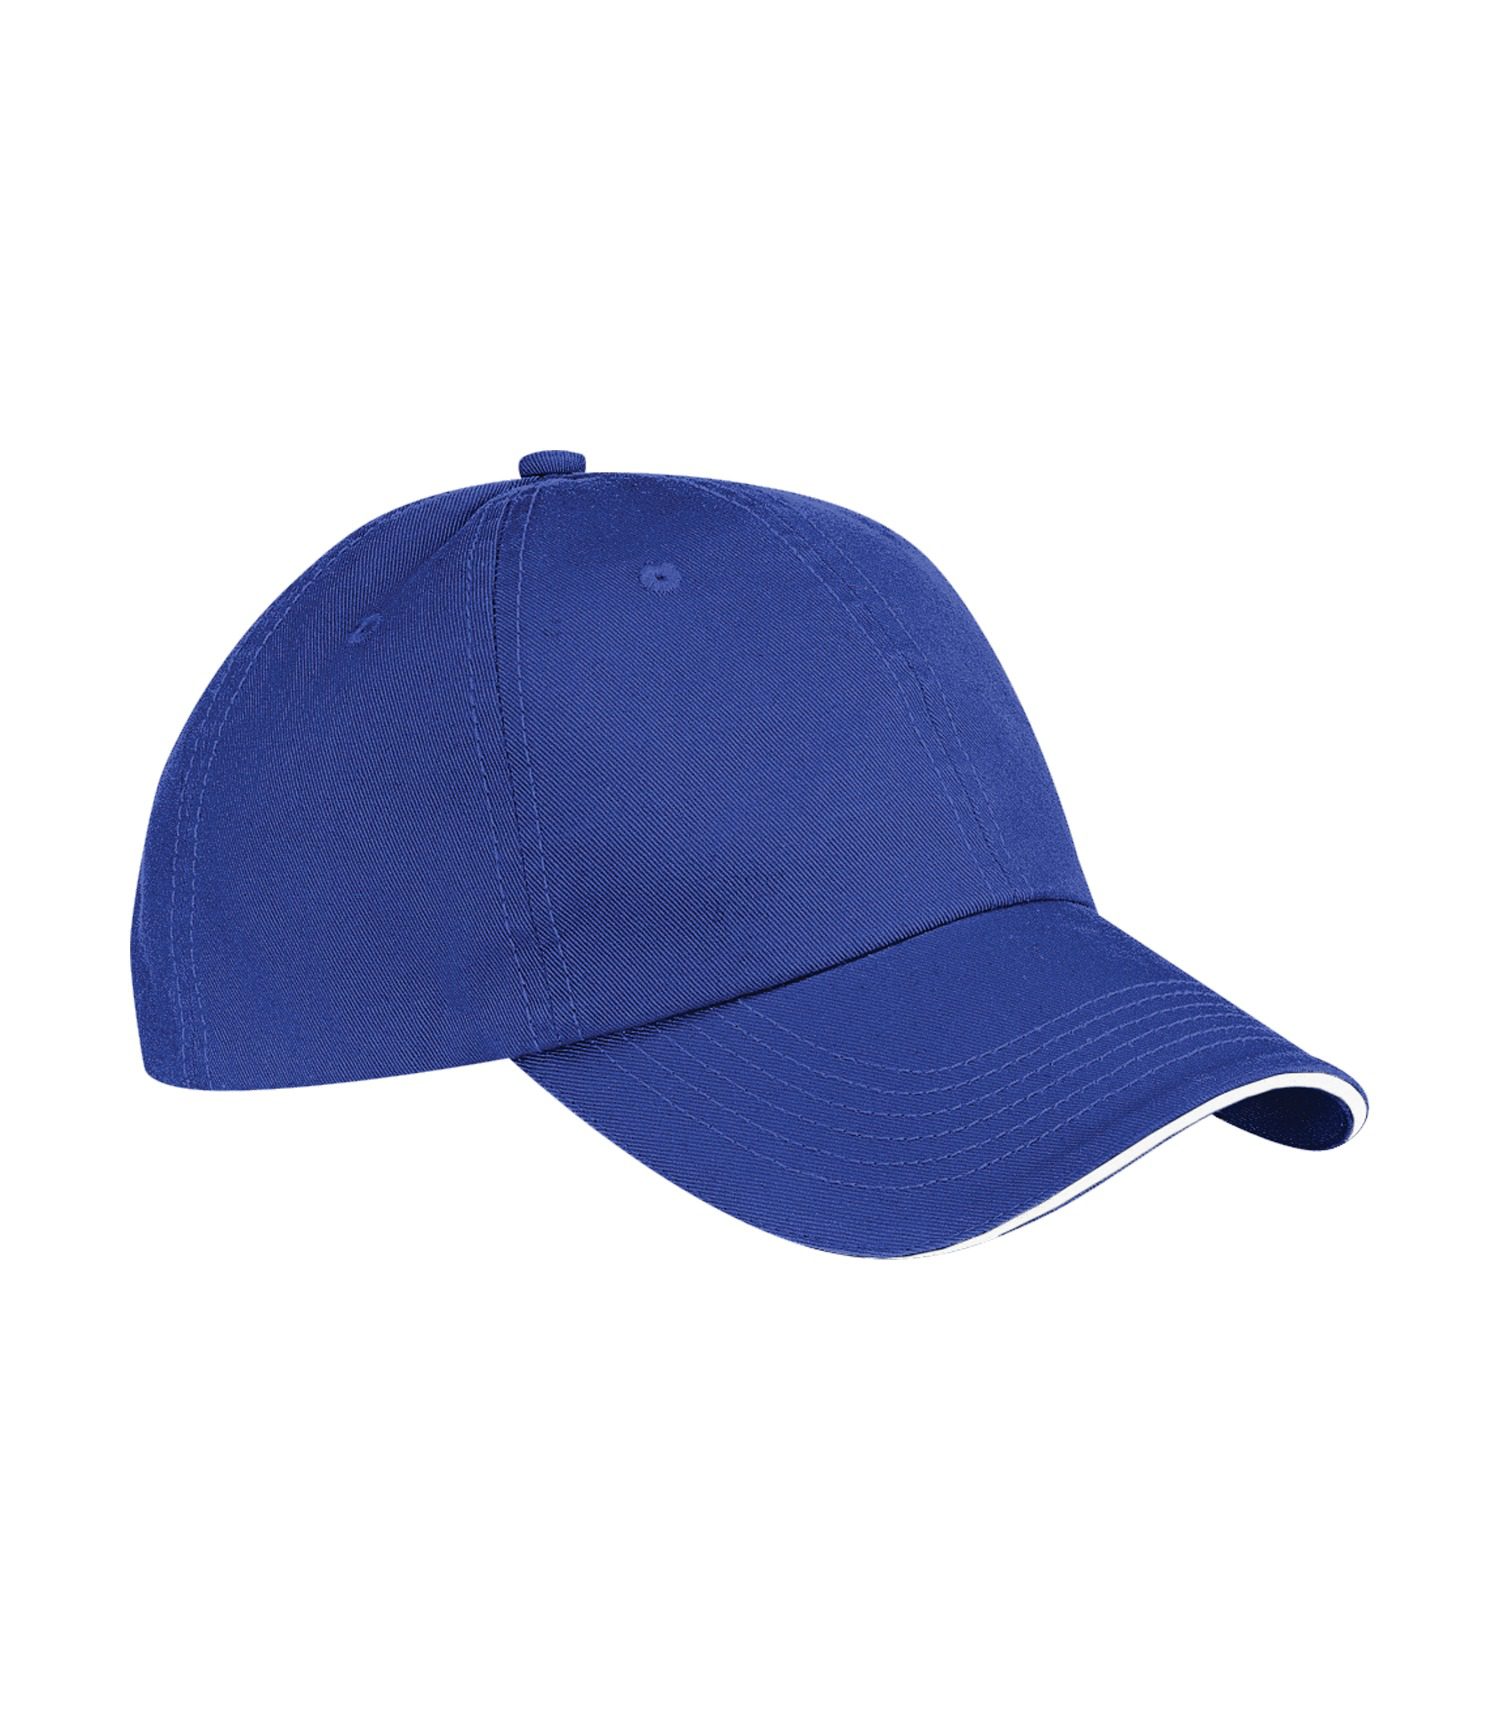 ATC™ SANDWICH BILL CAP #C140 Royal Blue / White